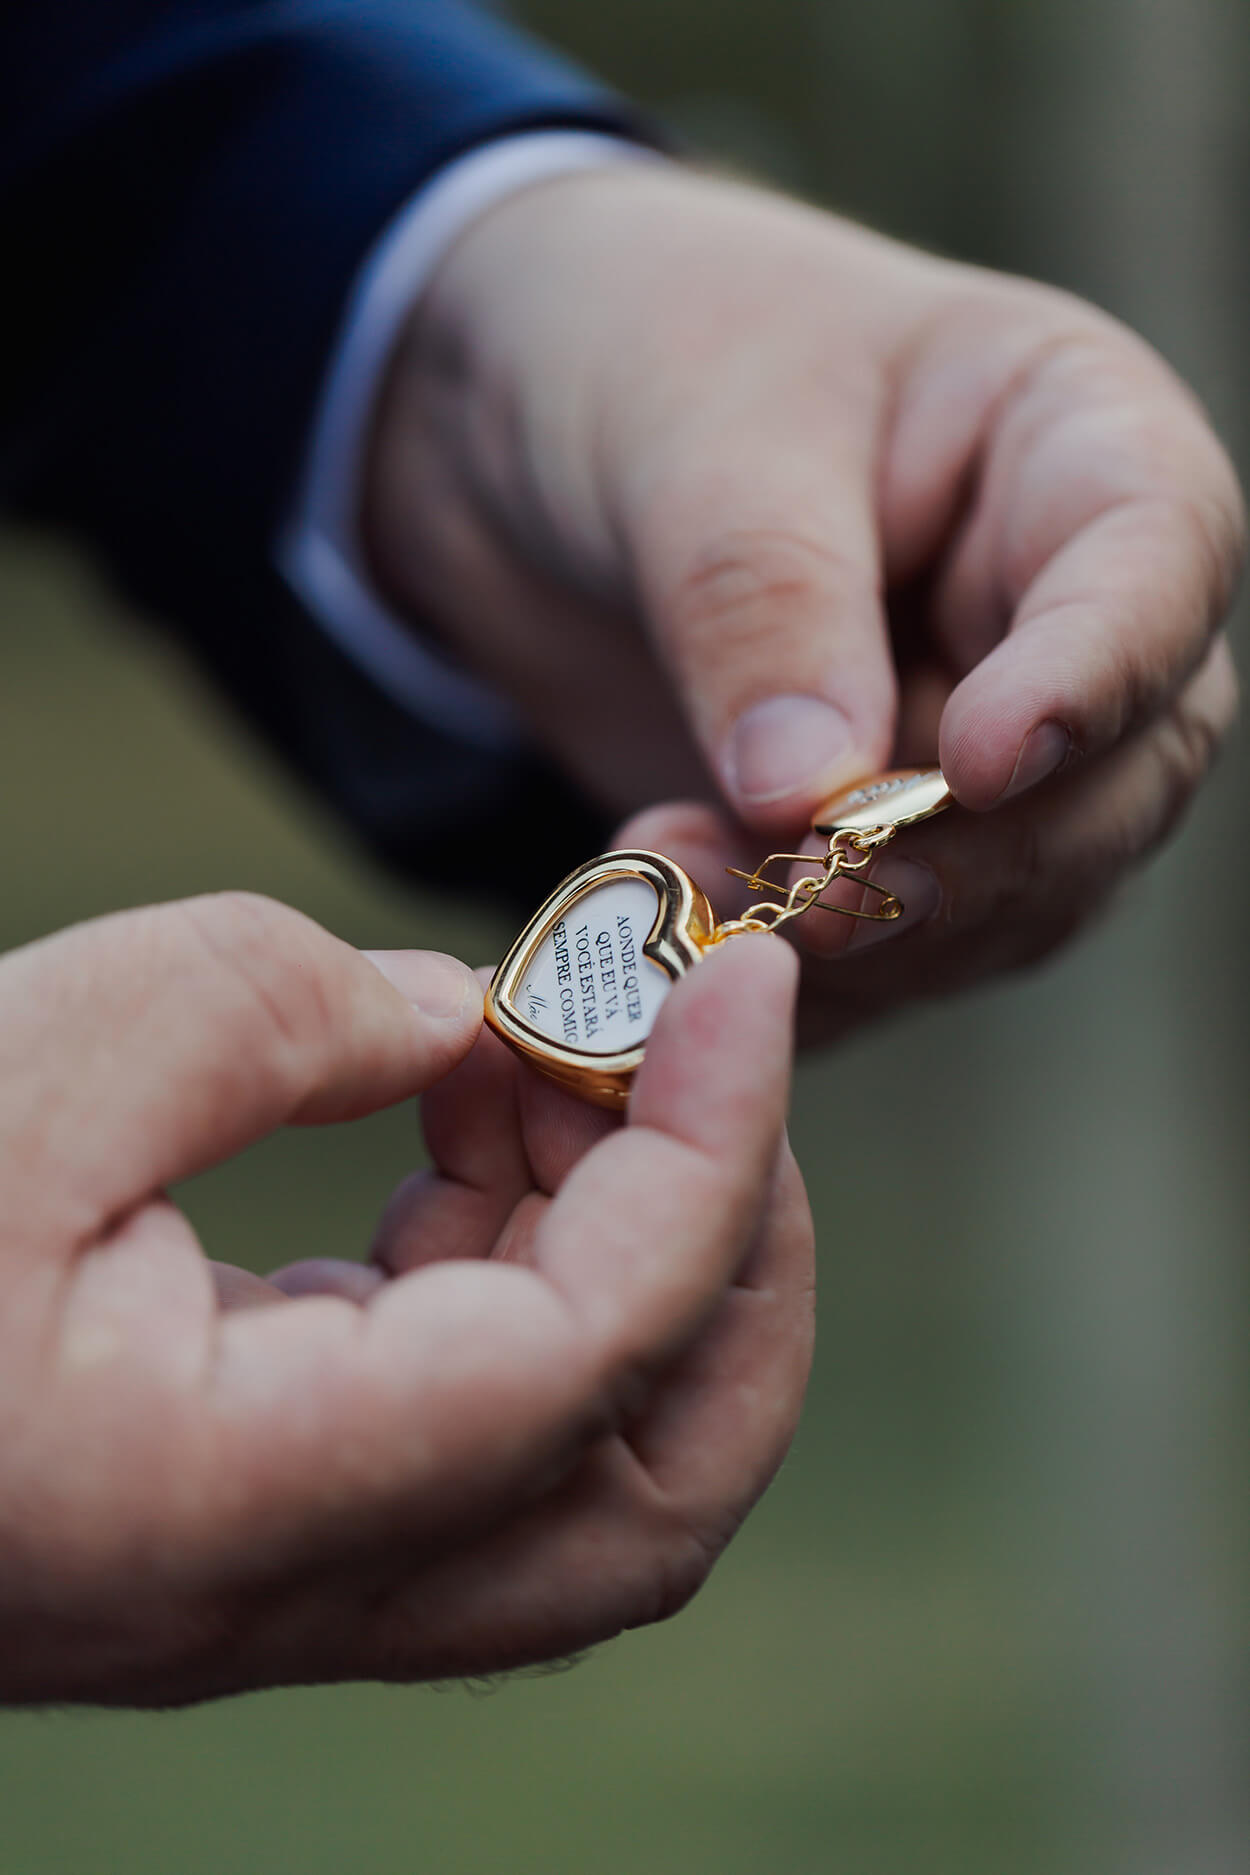 Mãos mascluinas segurando pequeno relicário dourado em formato de coração